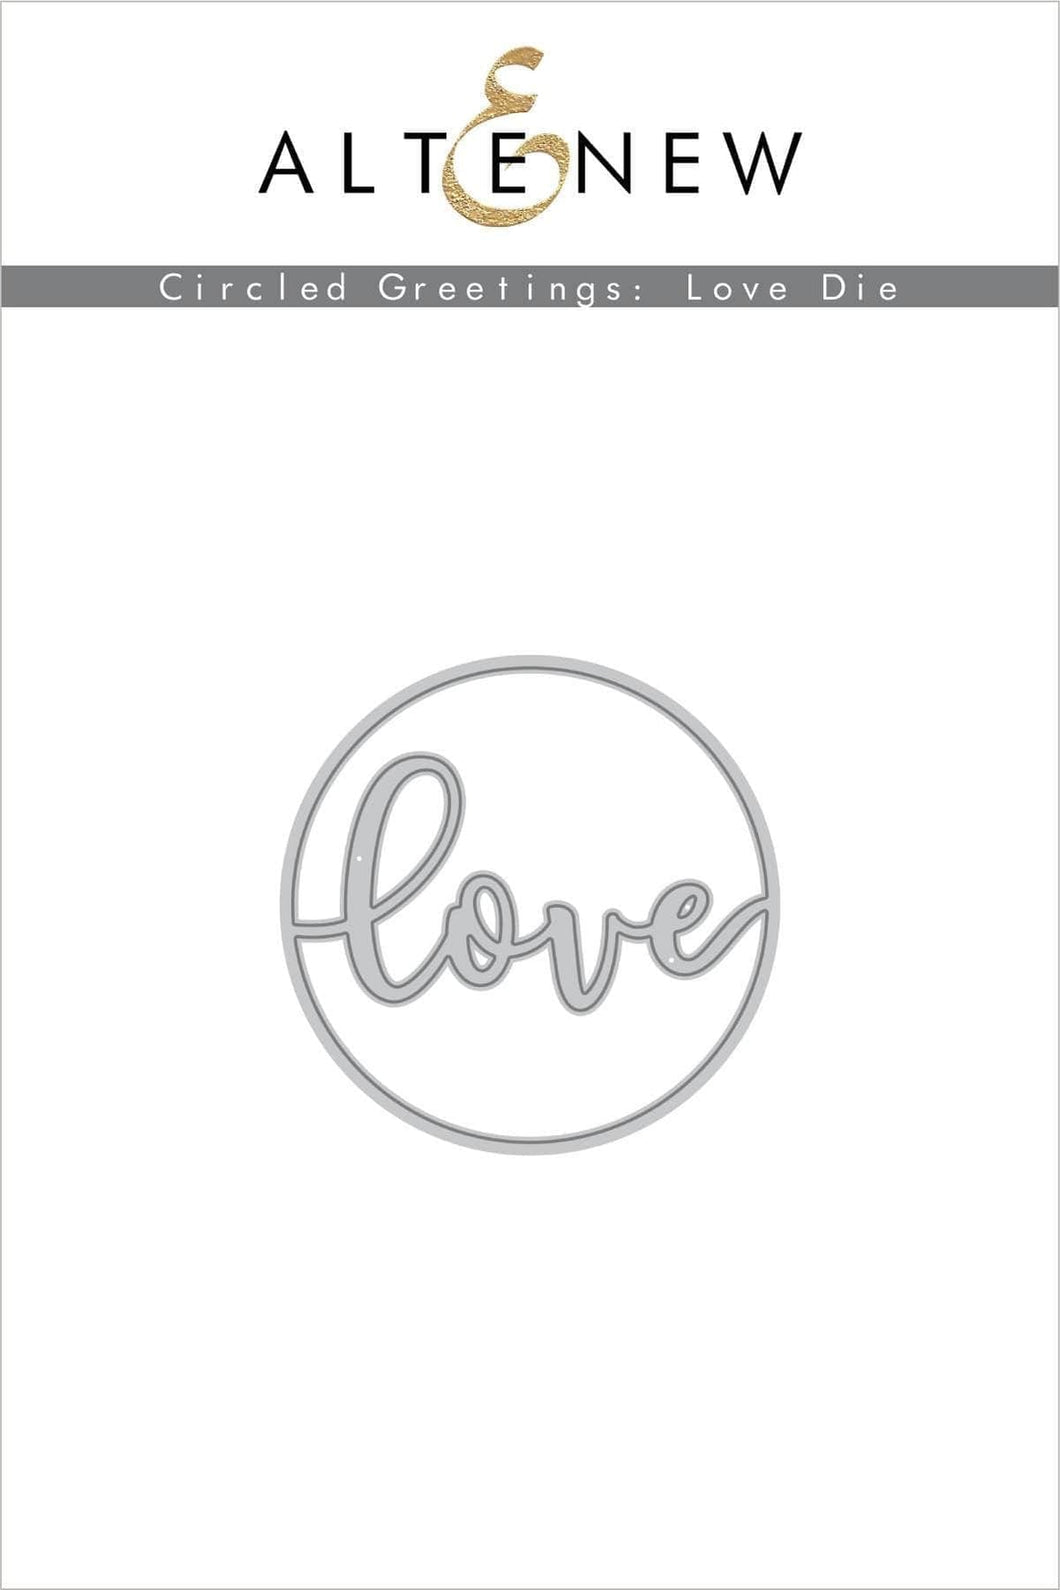 Circled Greetings: Love Die - Altenew